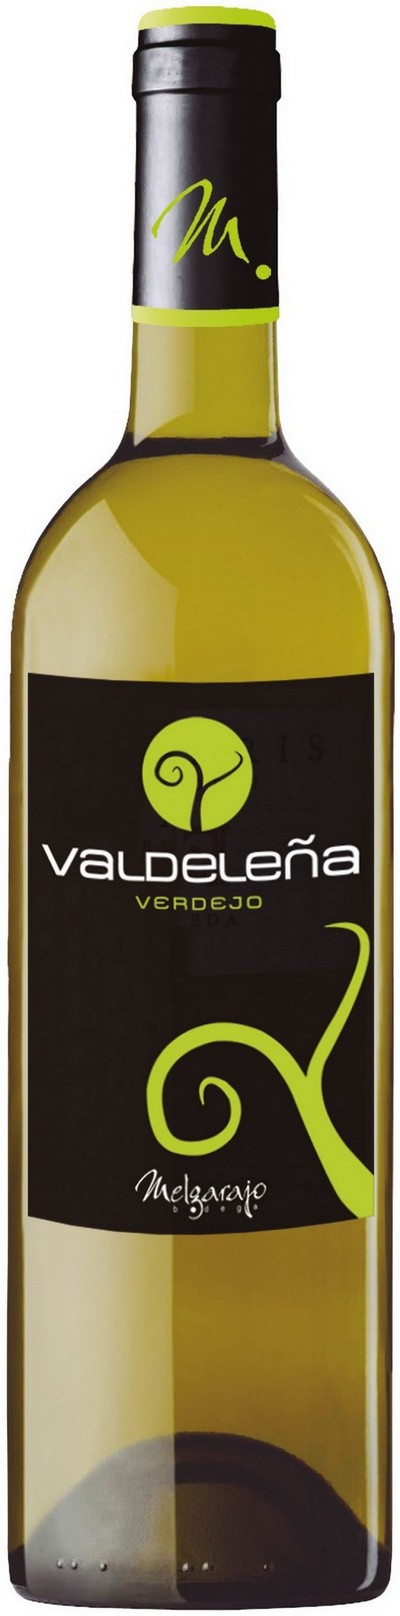 Valdeleña Verdejo 2018